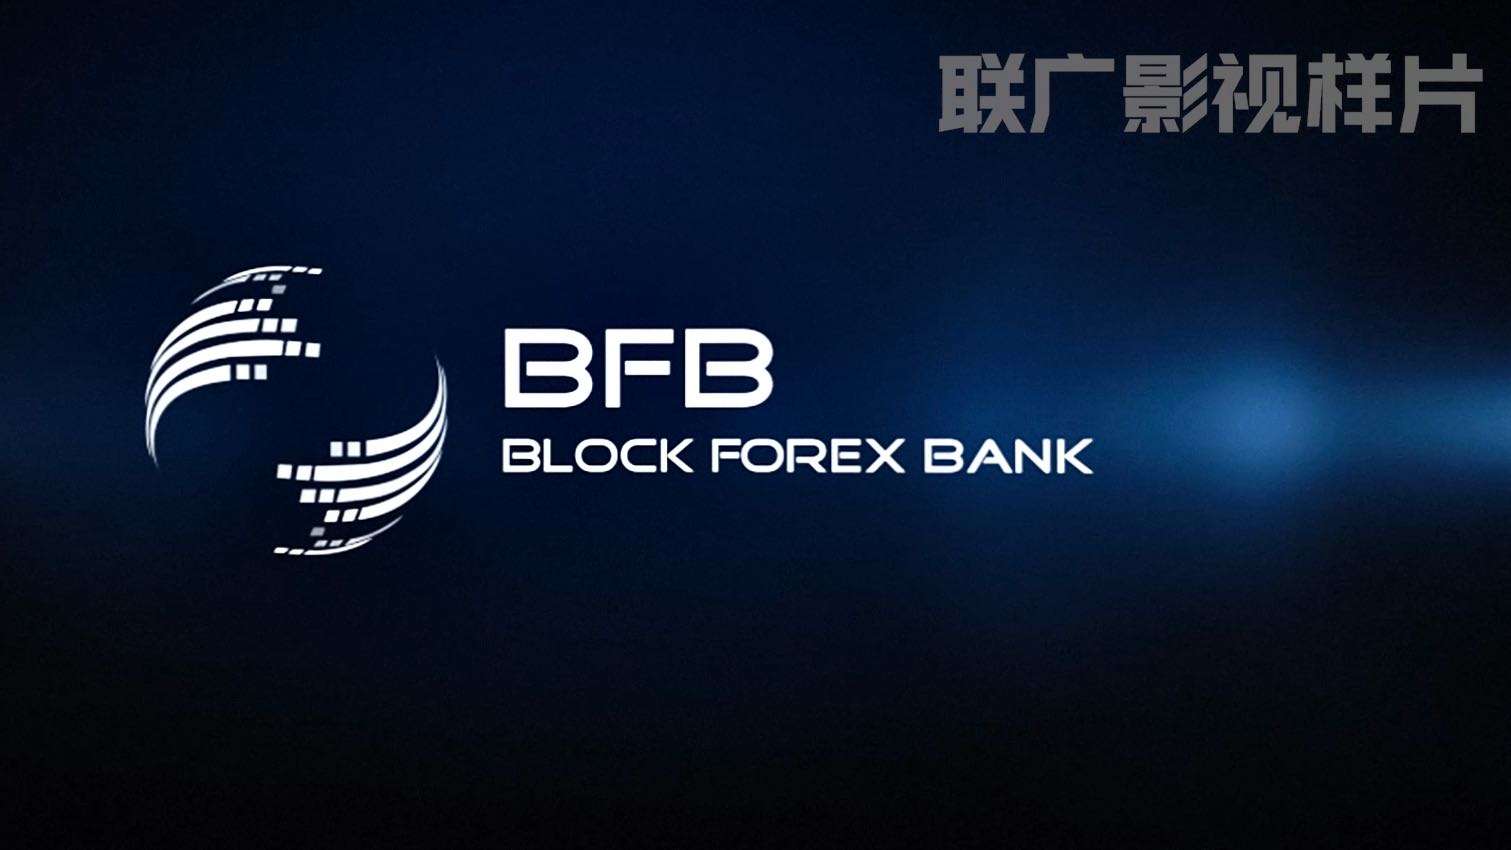 BLOCK FOREX BANK